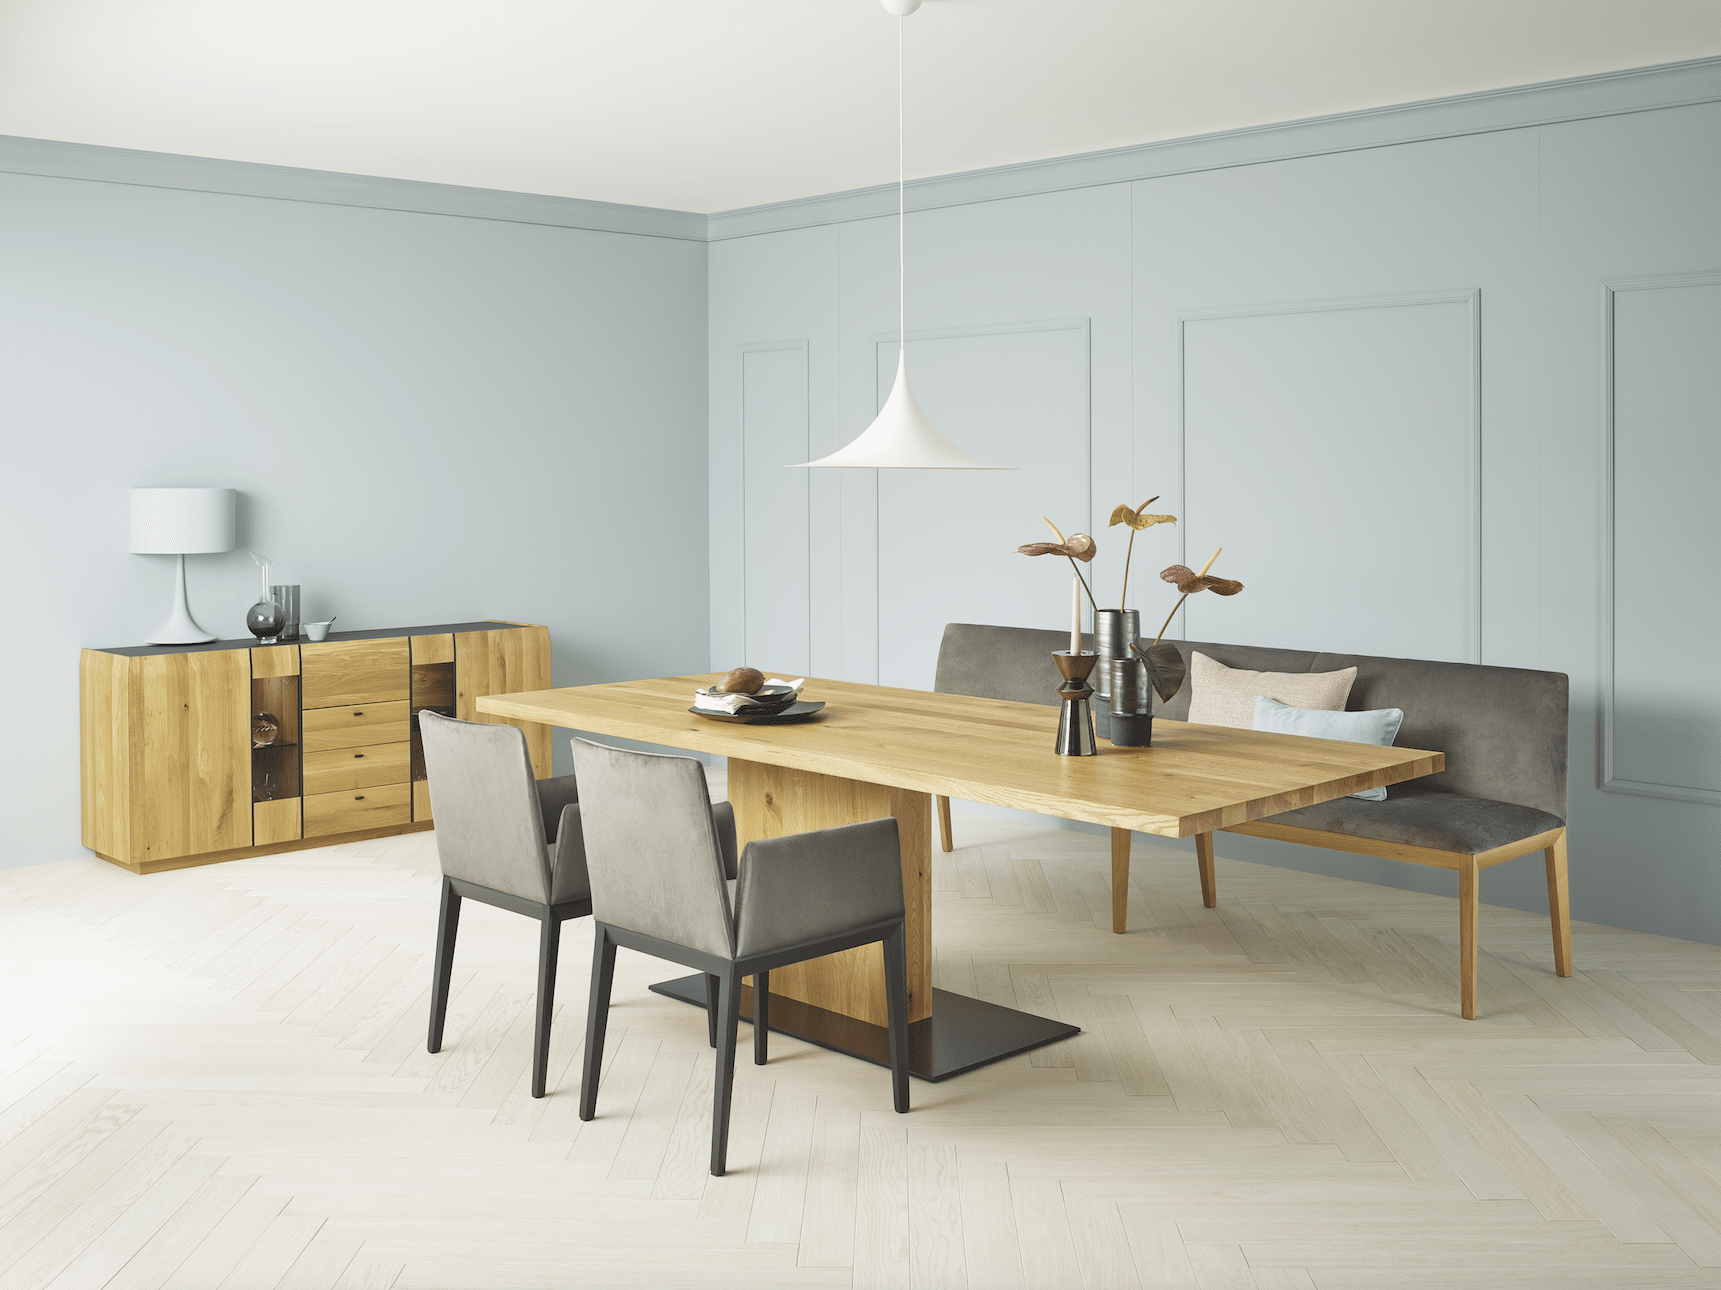 WOHNHAUS Grill & Ronacher zeigt ein Esszimmer mit Möbeln von ANREI in Asteiche gebürstet natur geölt und dunklen Stühlen.